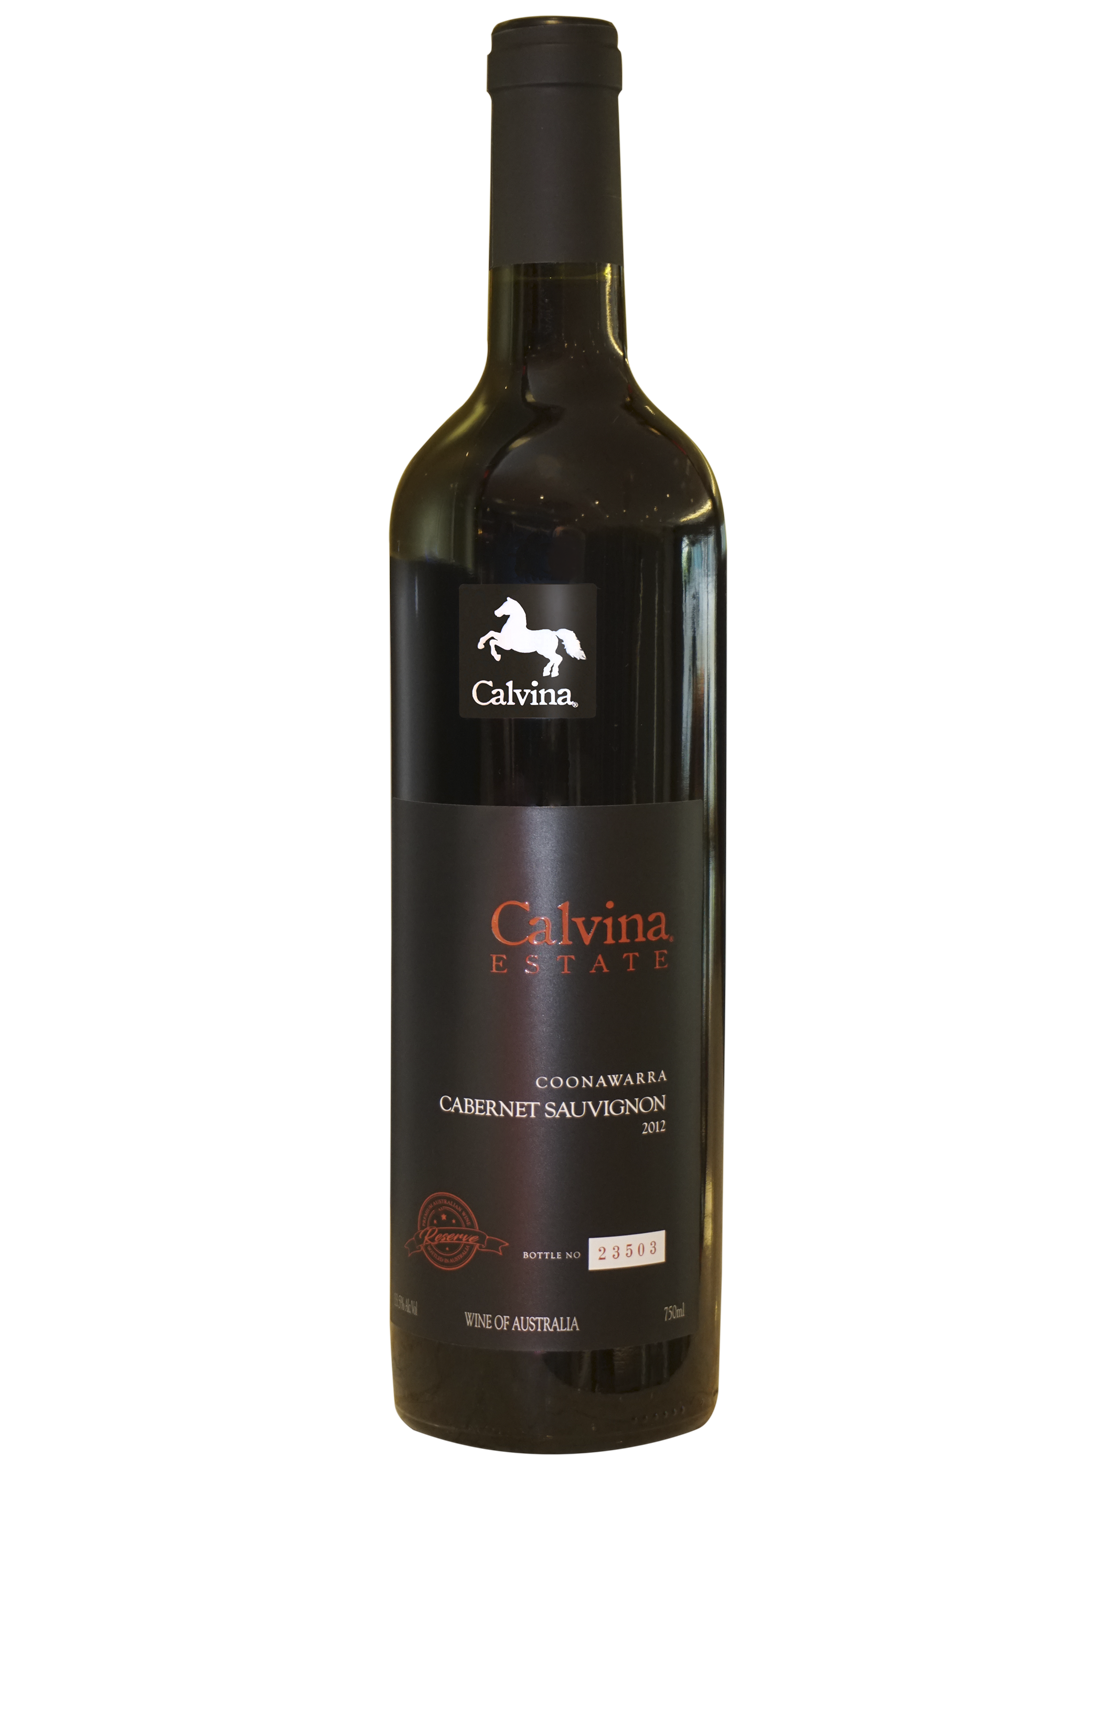 2012南澳卡本内蘇維濃 Cabernet Sauvignon (澳洲紅酒)